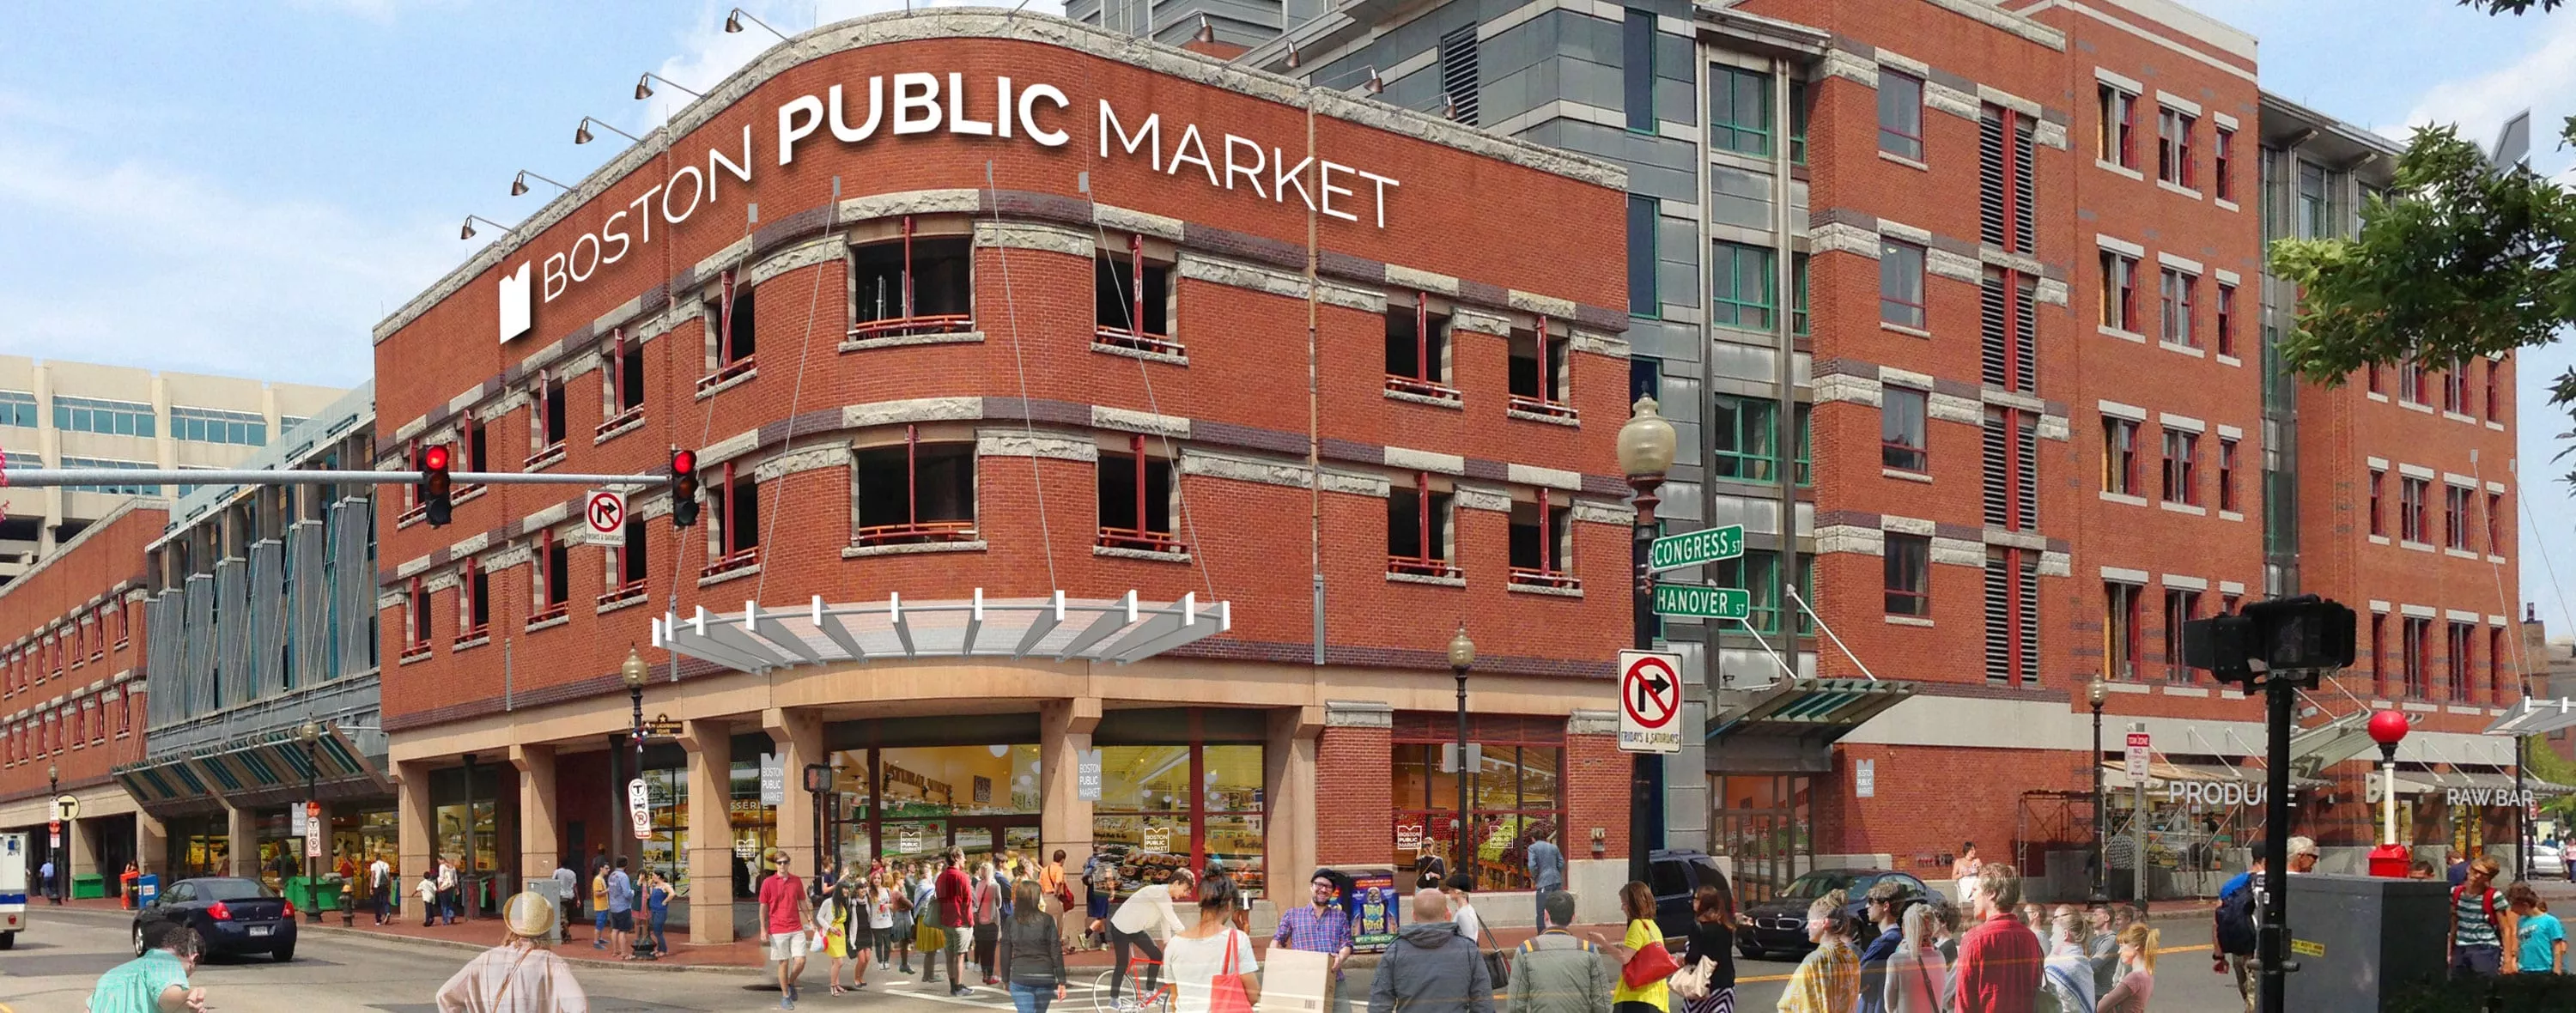 Boston Public Market in USA, North America | Architecture - Rated 3.8